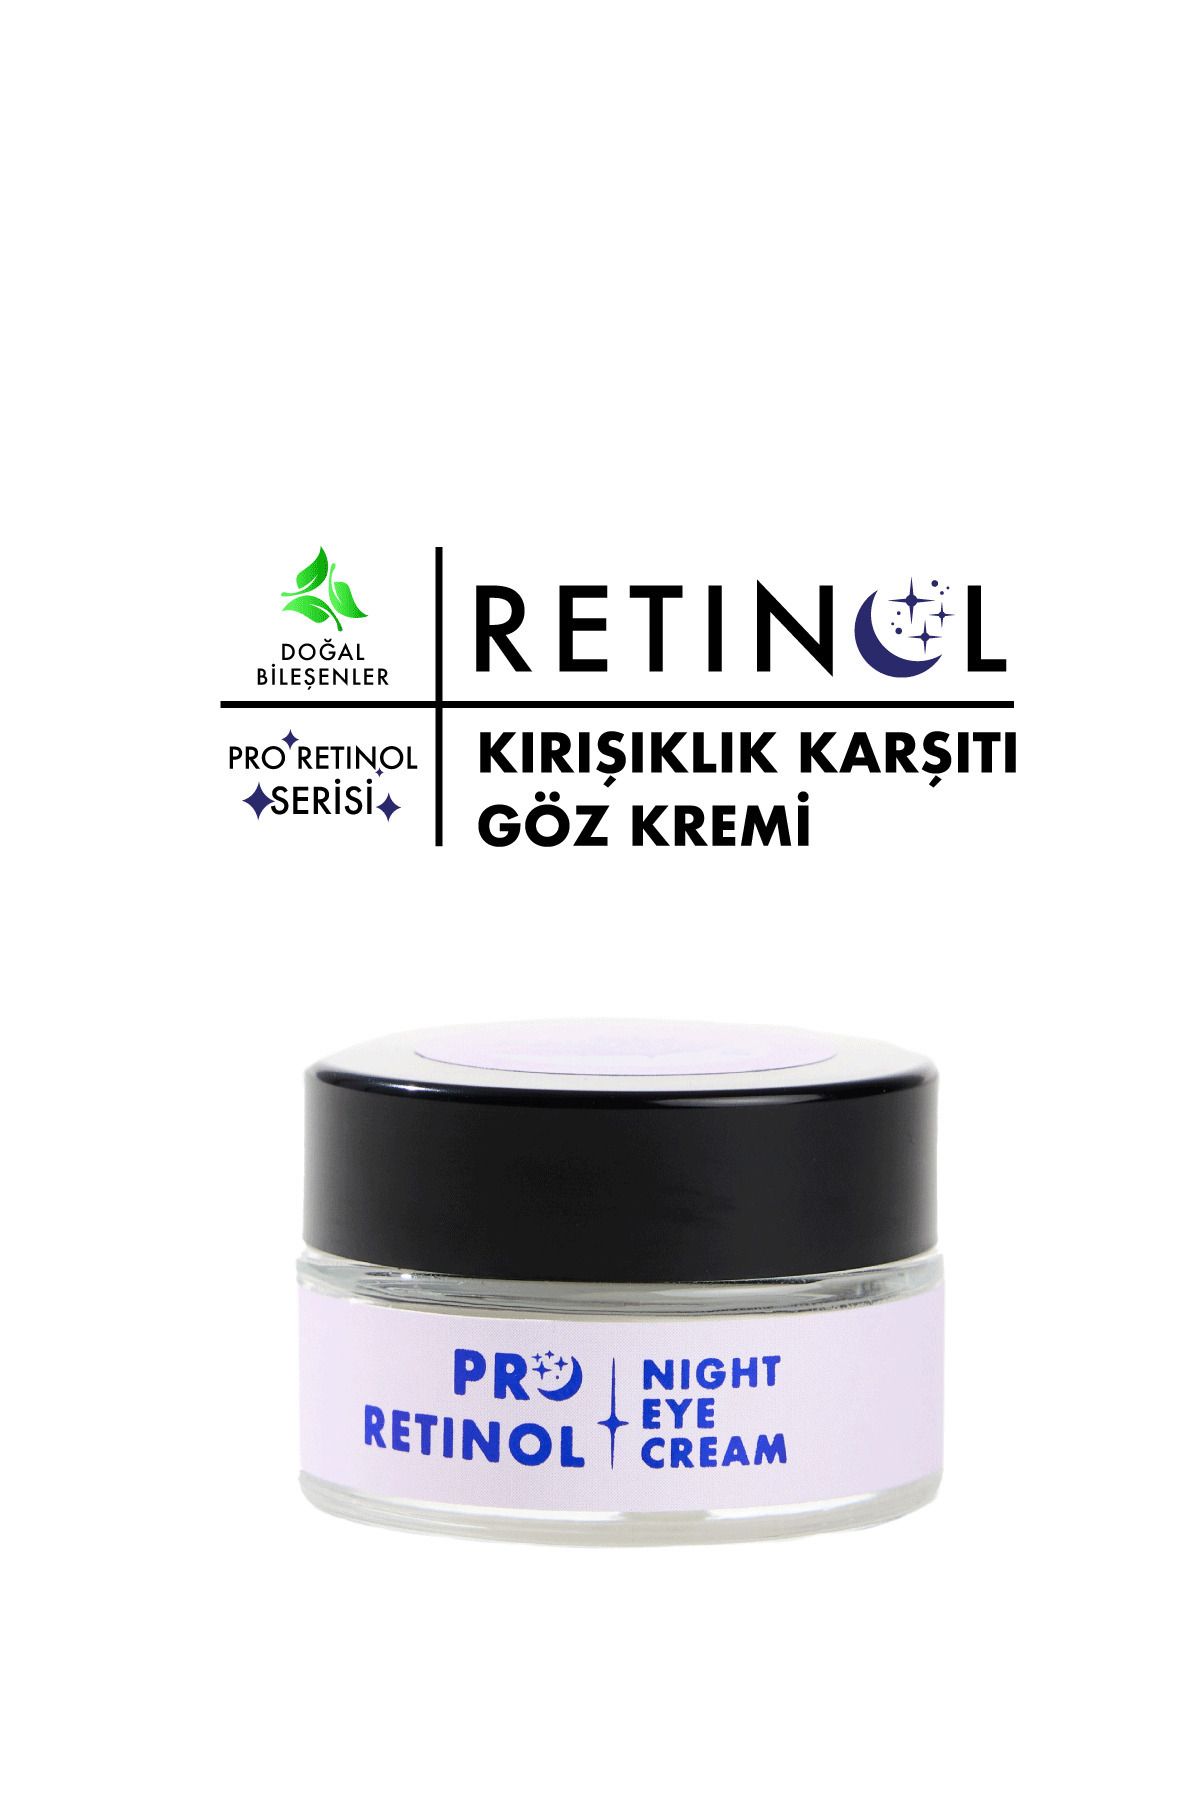 Polente Natural PRO RETINOL EYE CREAM - Retinol İçeren Yaşlanma Karşıtı Göz Kremi